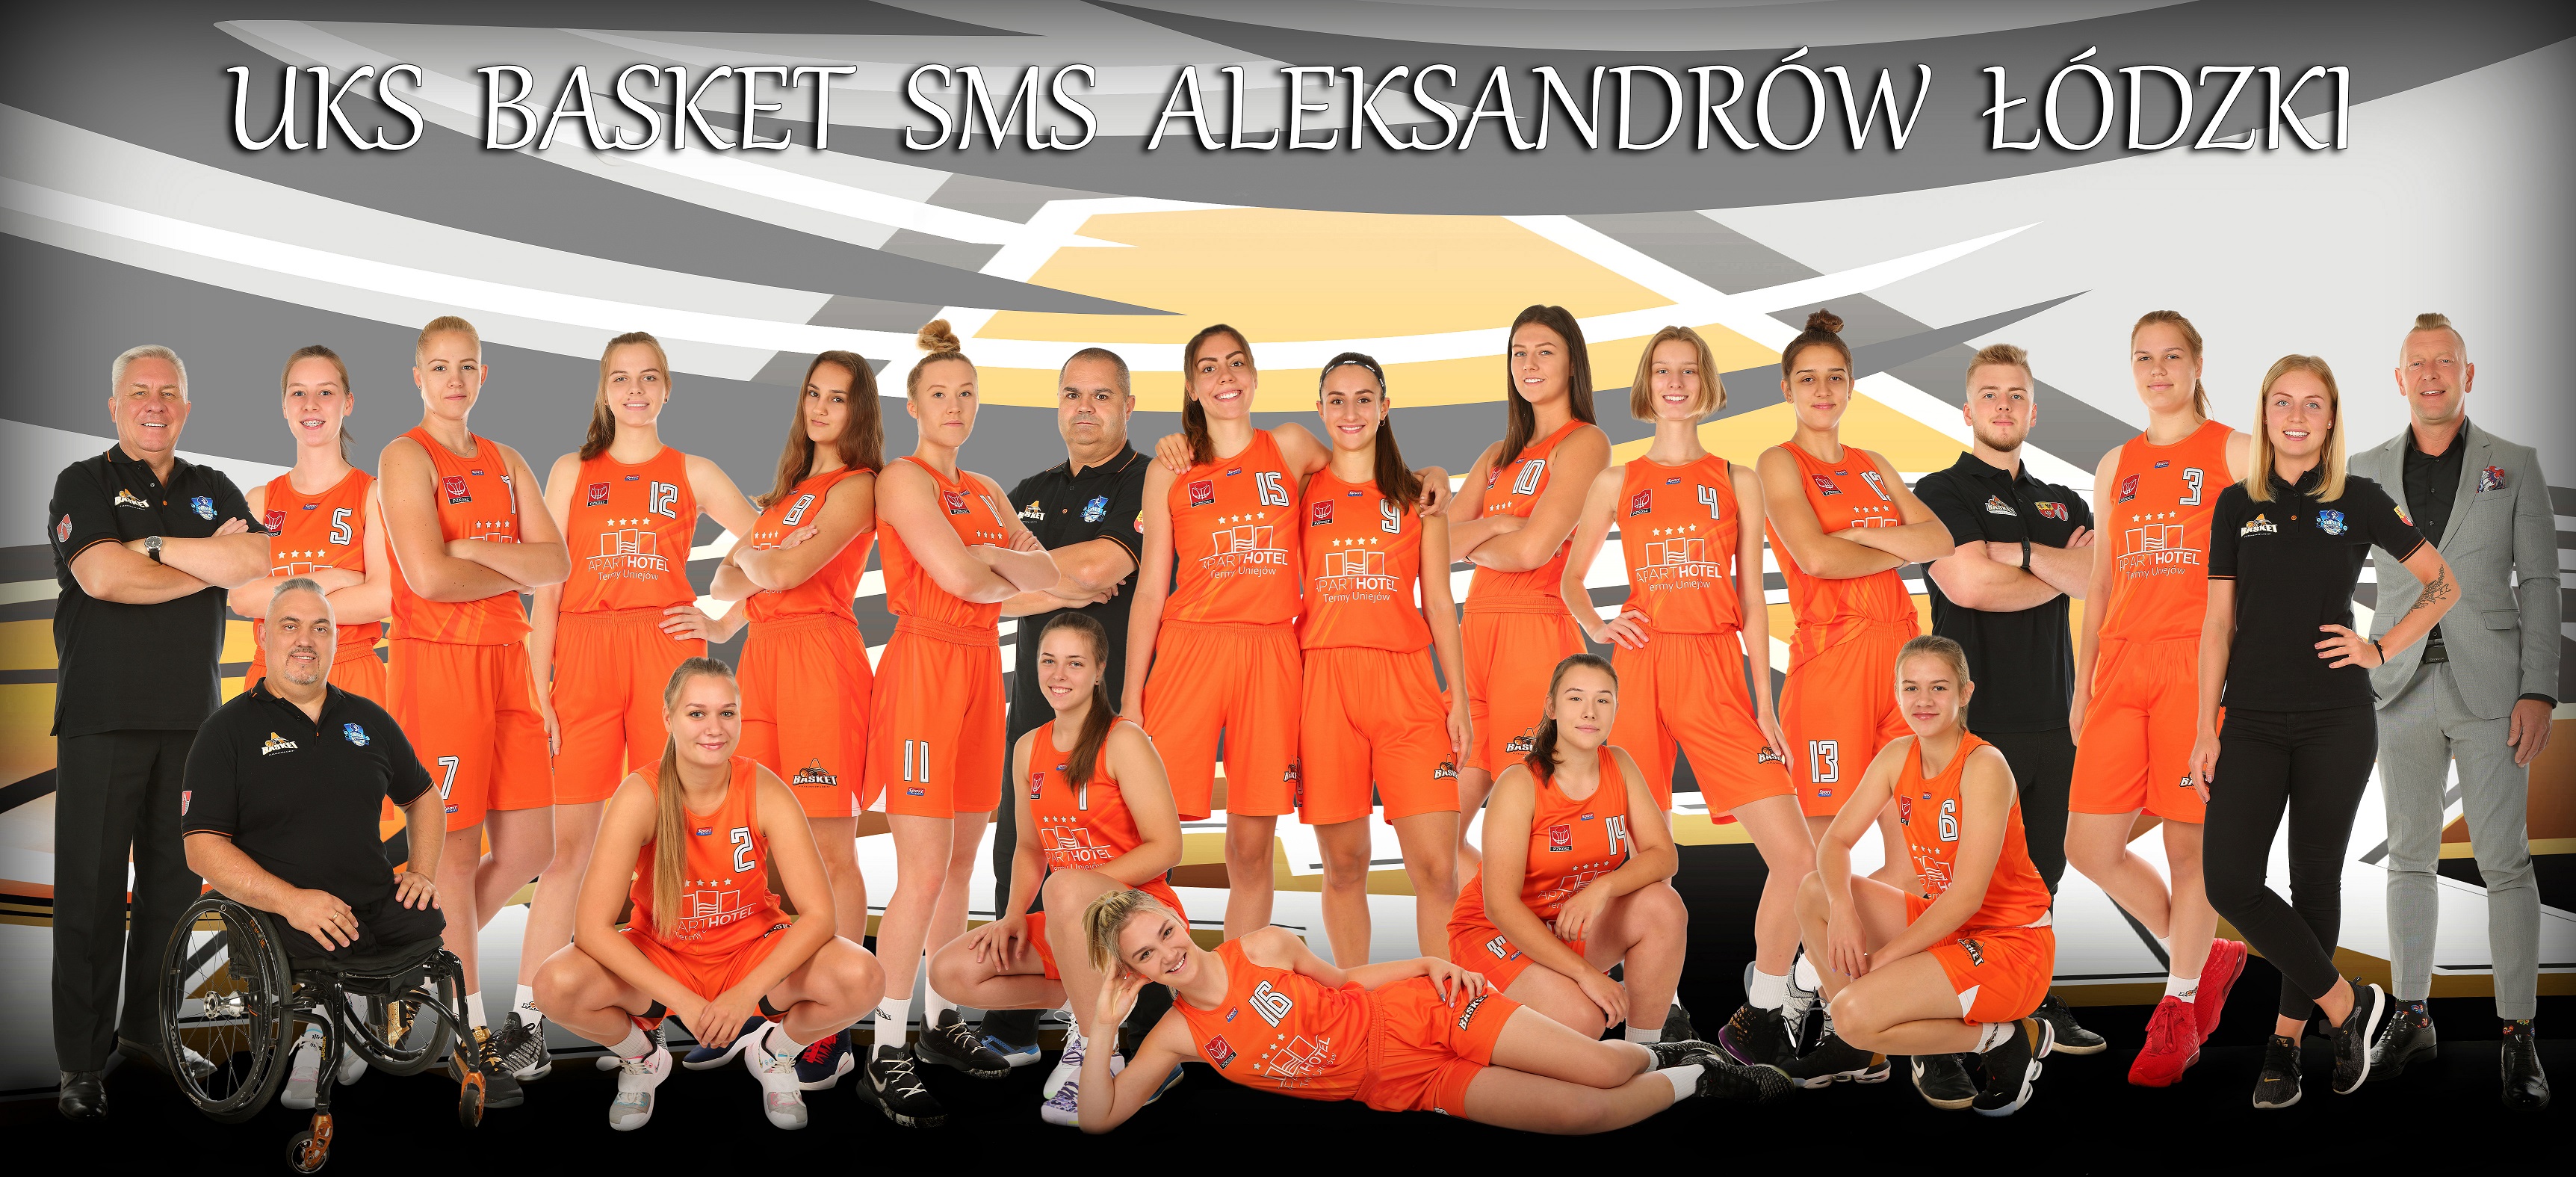 UKS Basket SMS Aleksandrów Łódzki